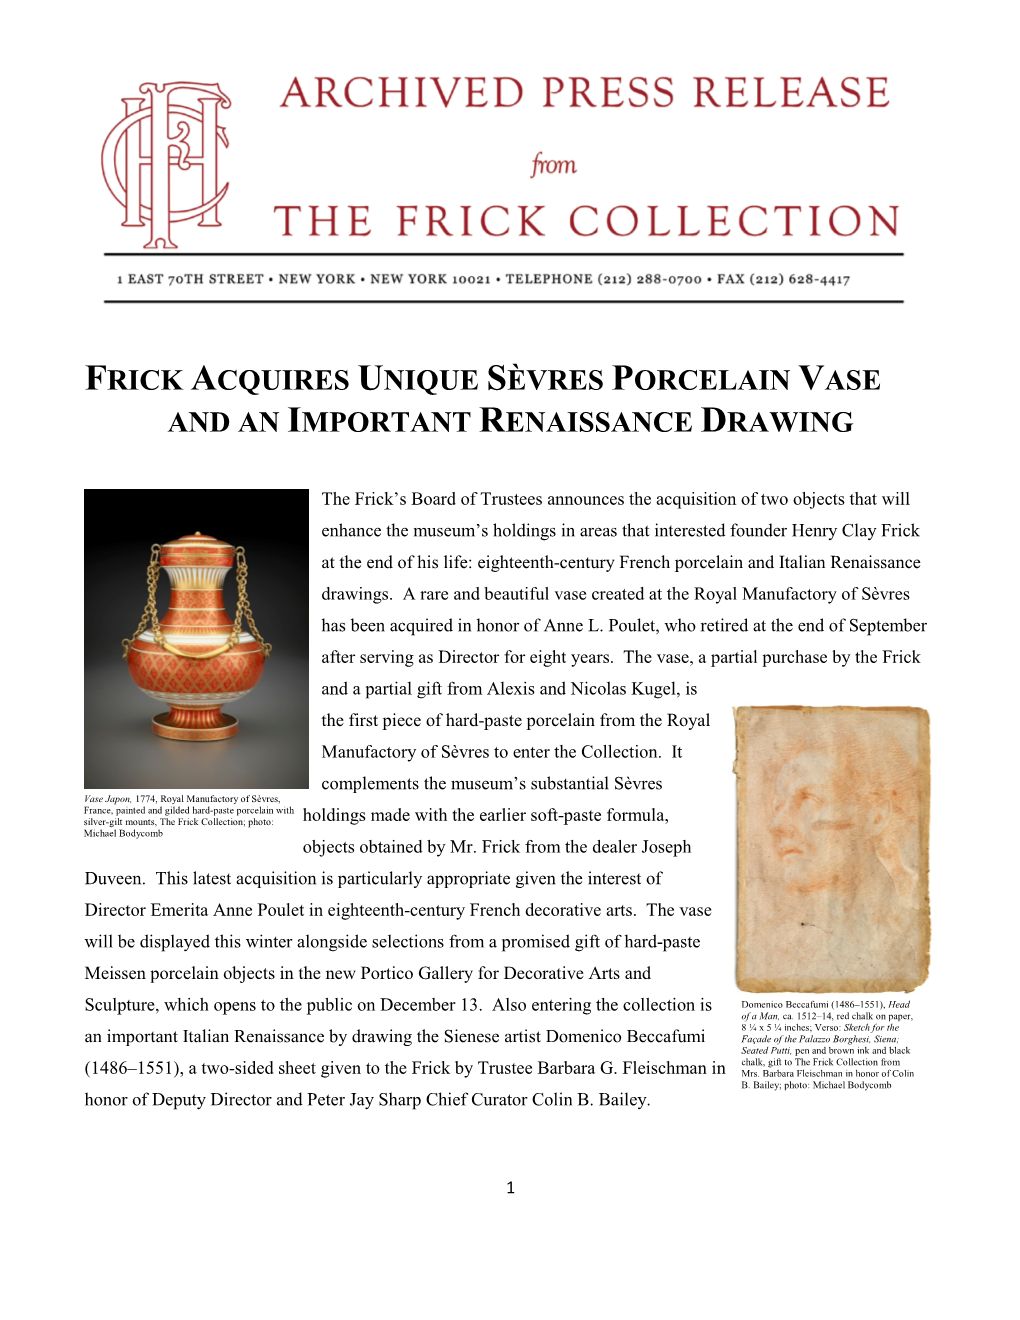 Frick Acquires Unique Sèvres Porcelain Vase and an Important Renaissance Drawing